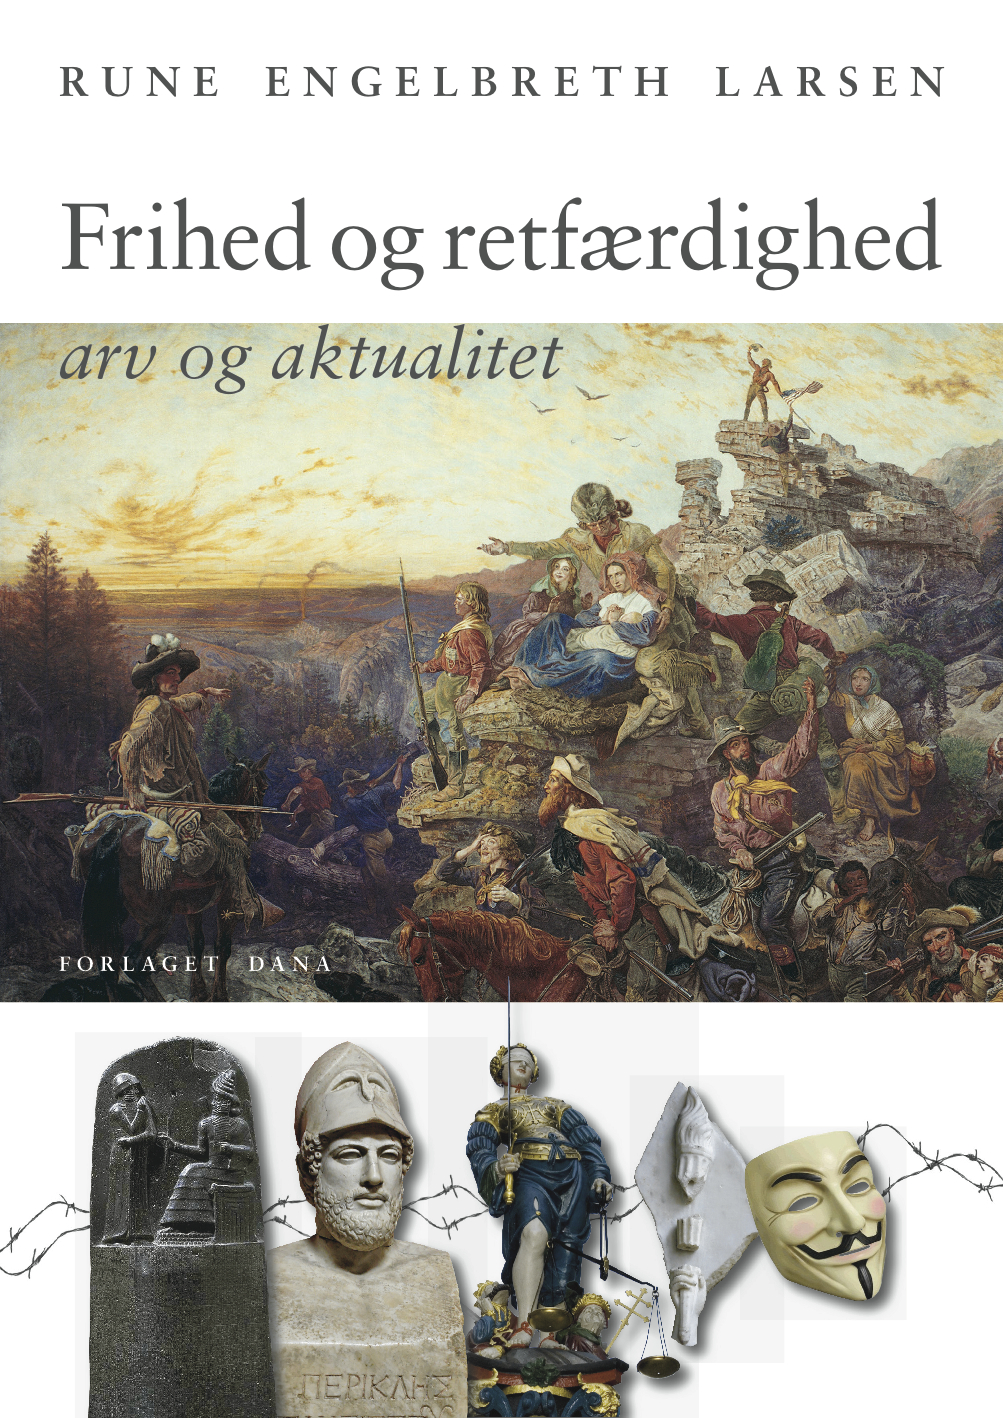 Forside til 'Frihed og retfærdighed' af Rune Engelbreth Larsen